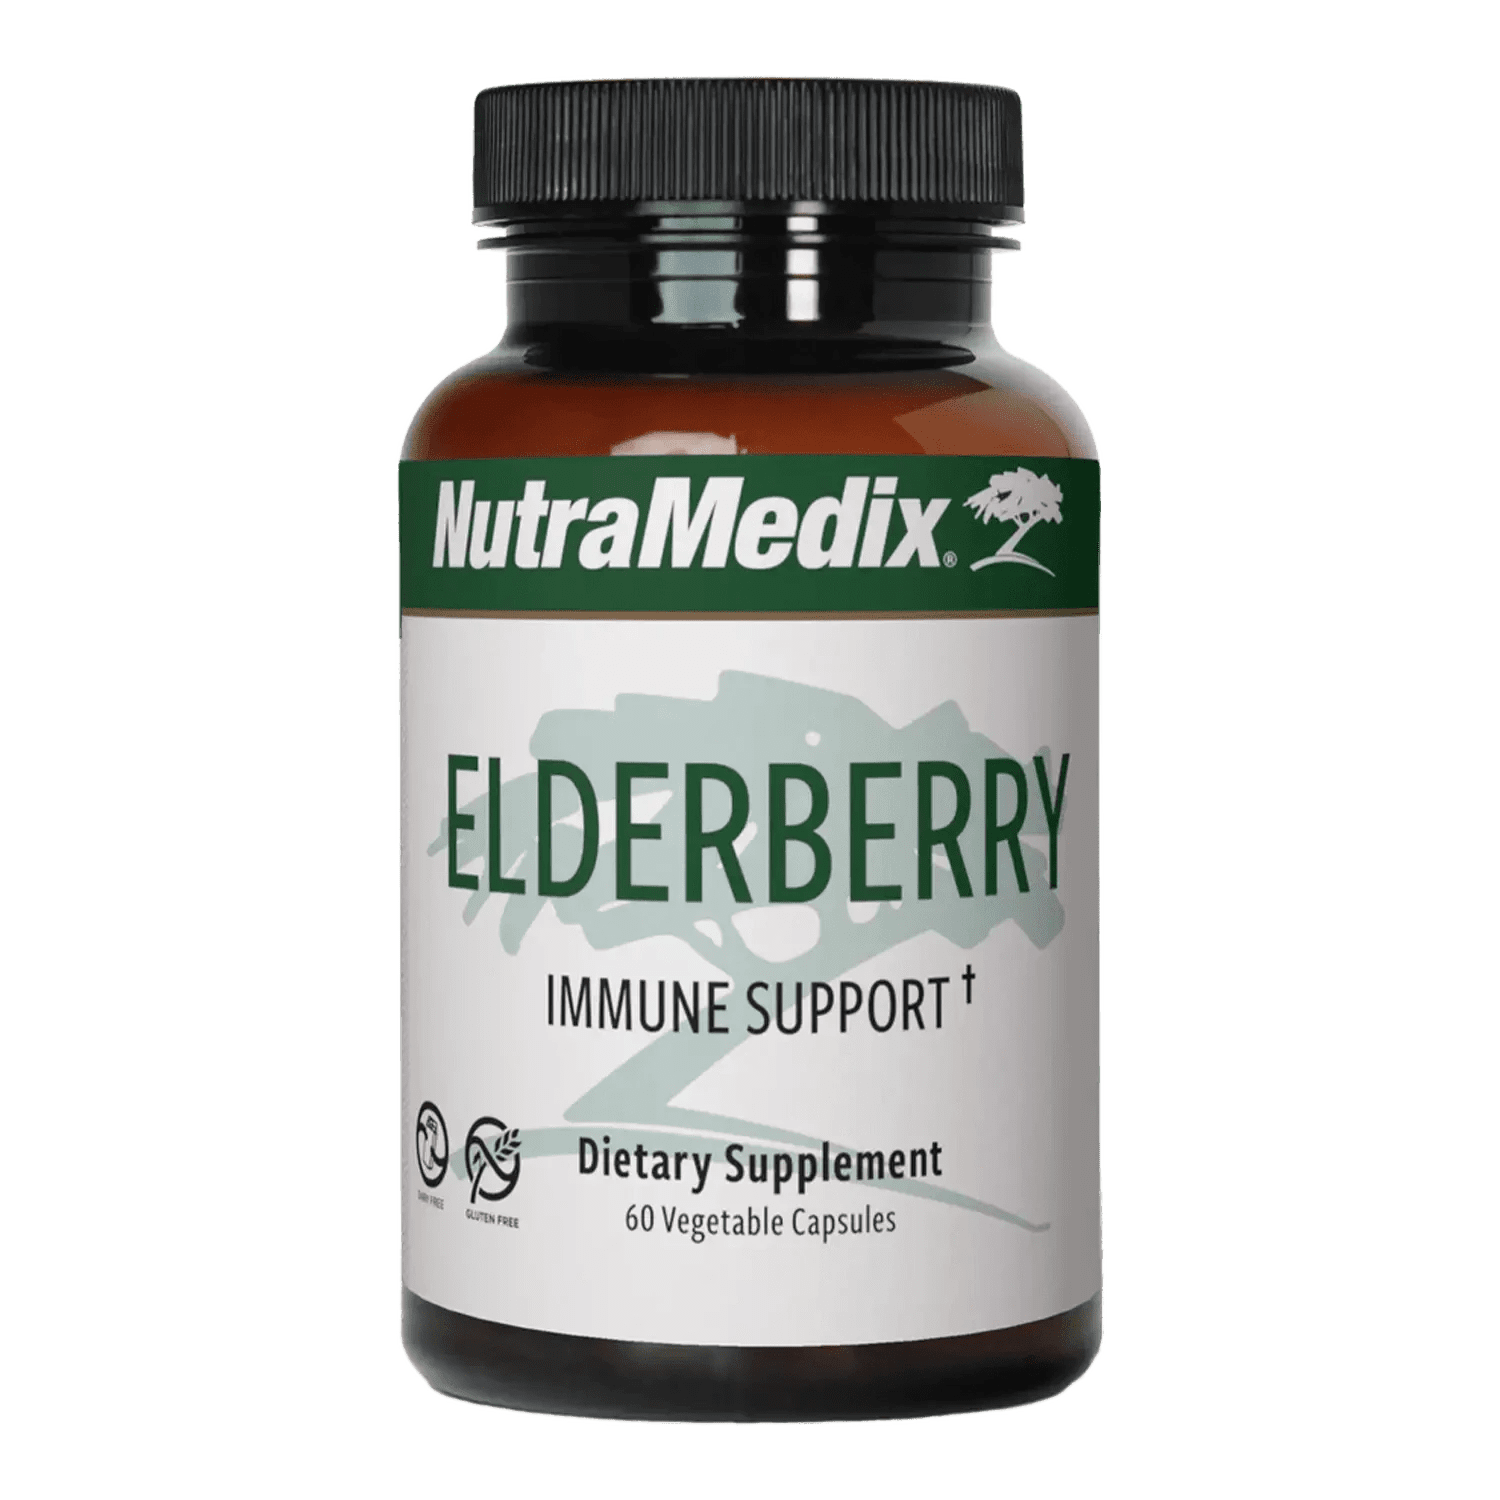 Elderberry - 60 Vegetable Capsules for immune support